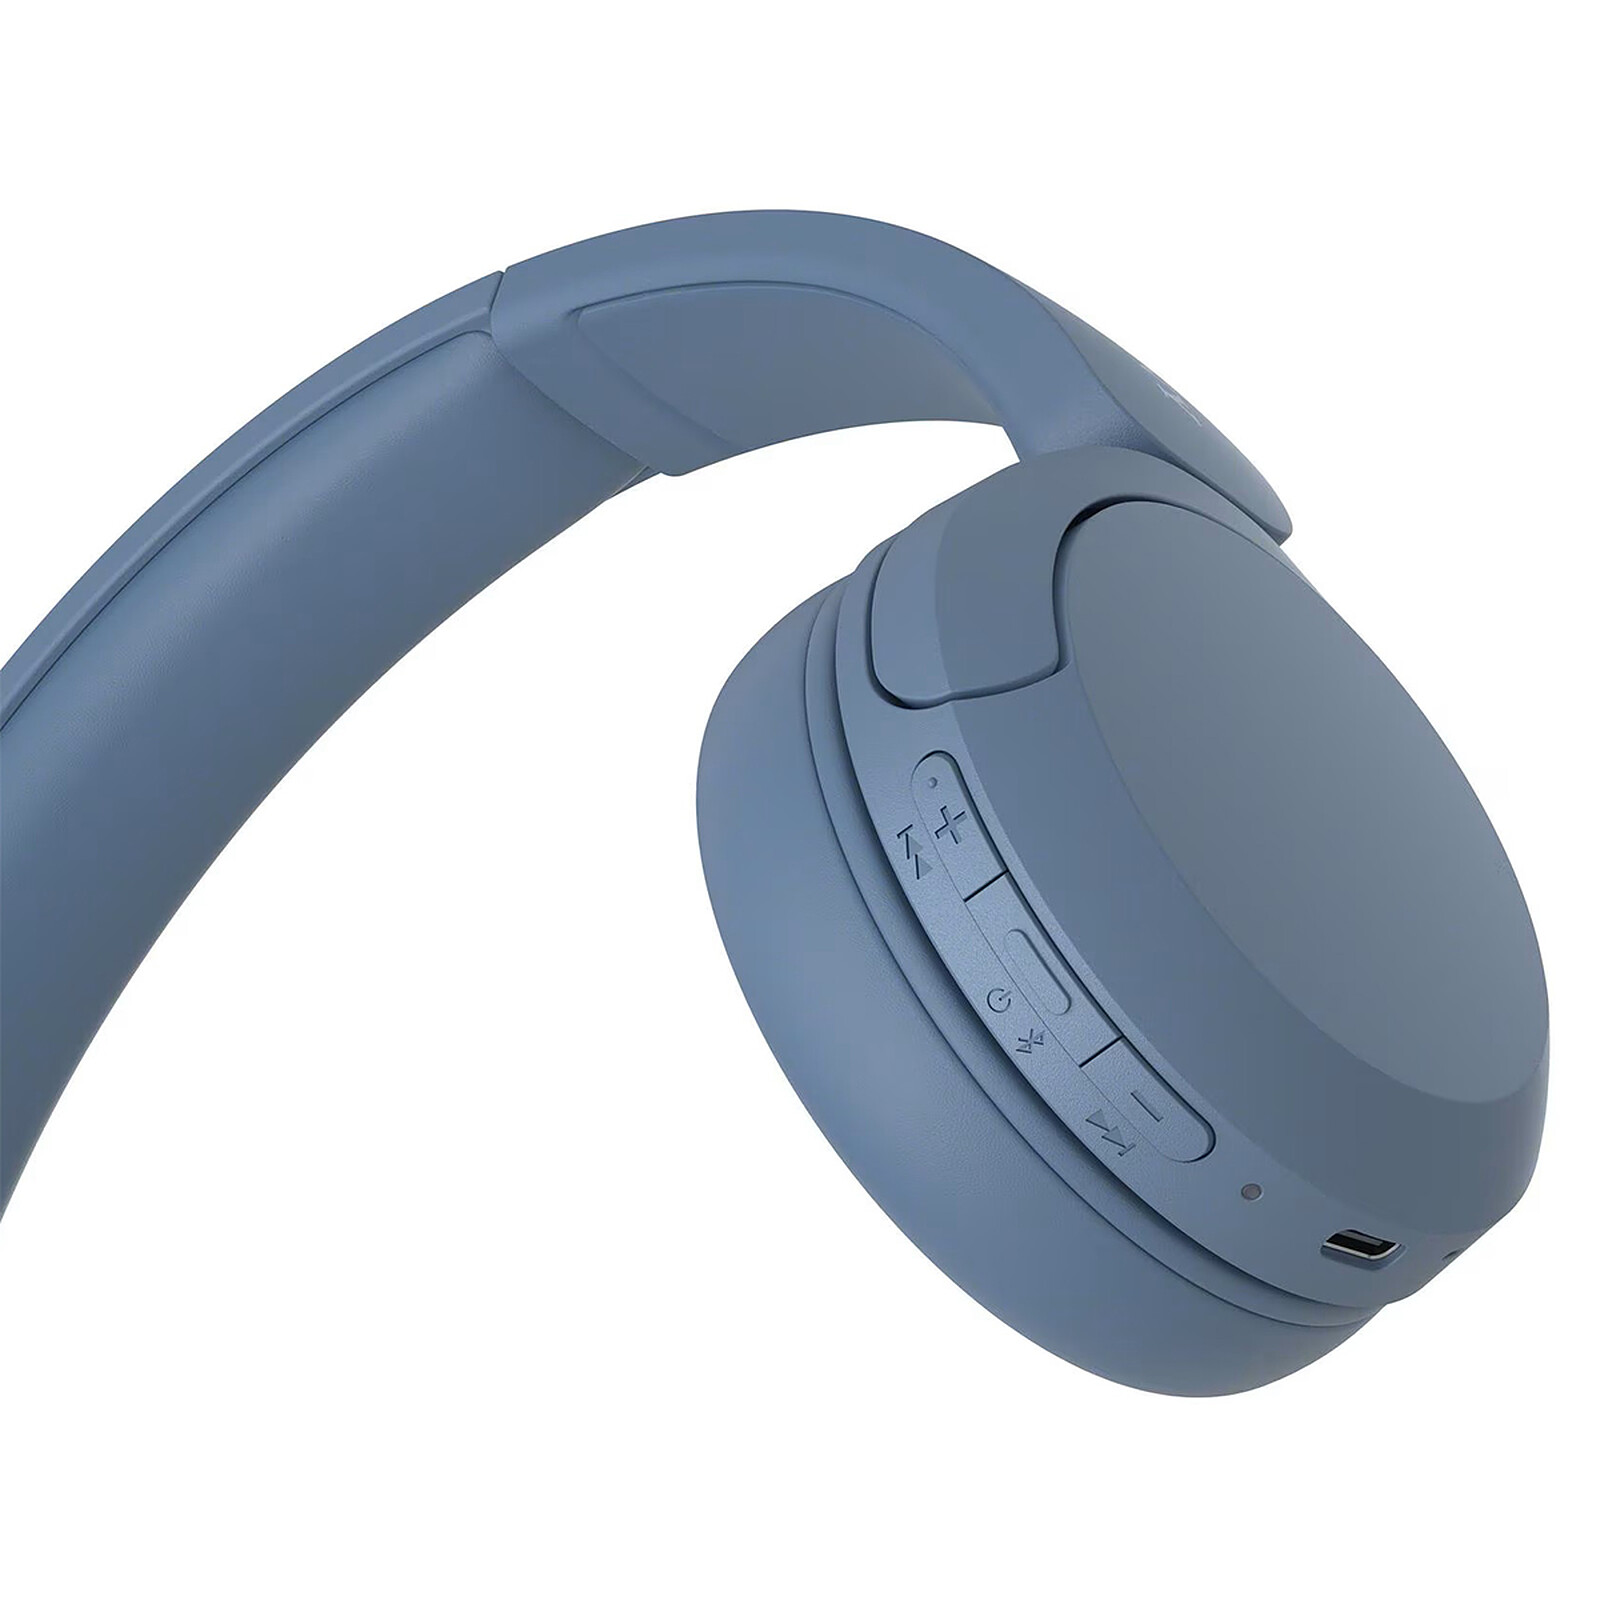 Caque Bluetooth Sony - WH-CH520 - Bleu